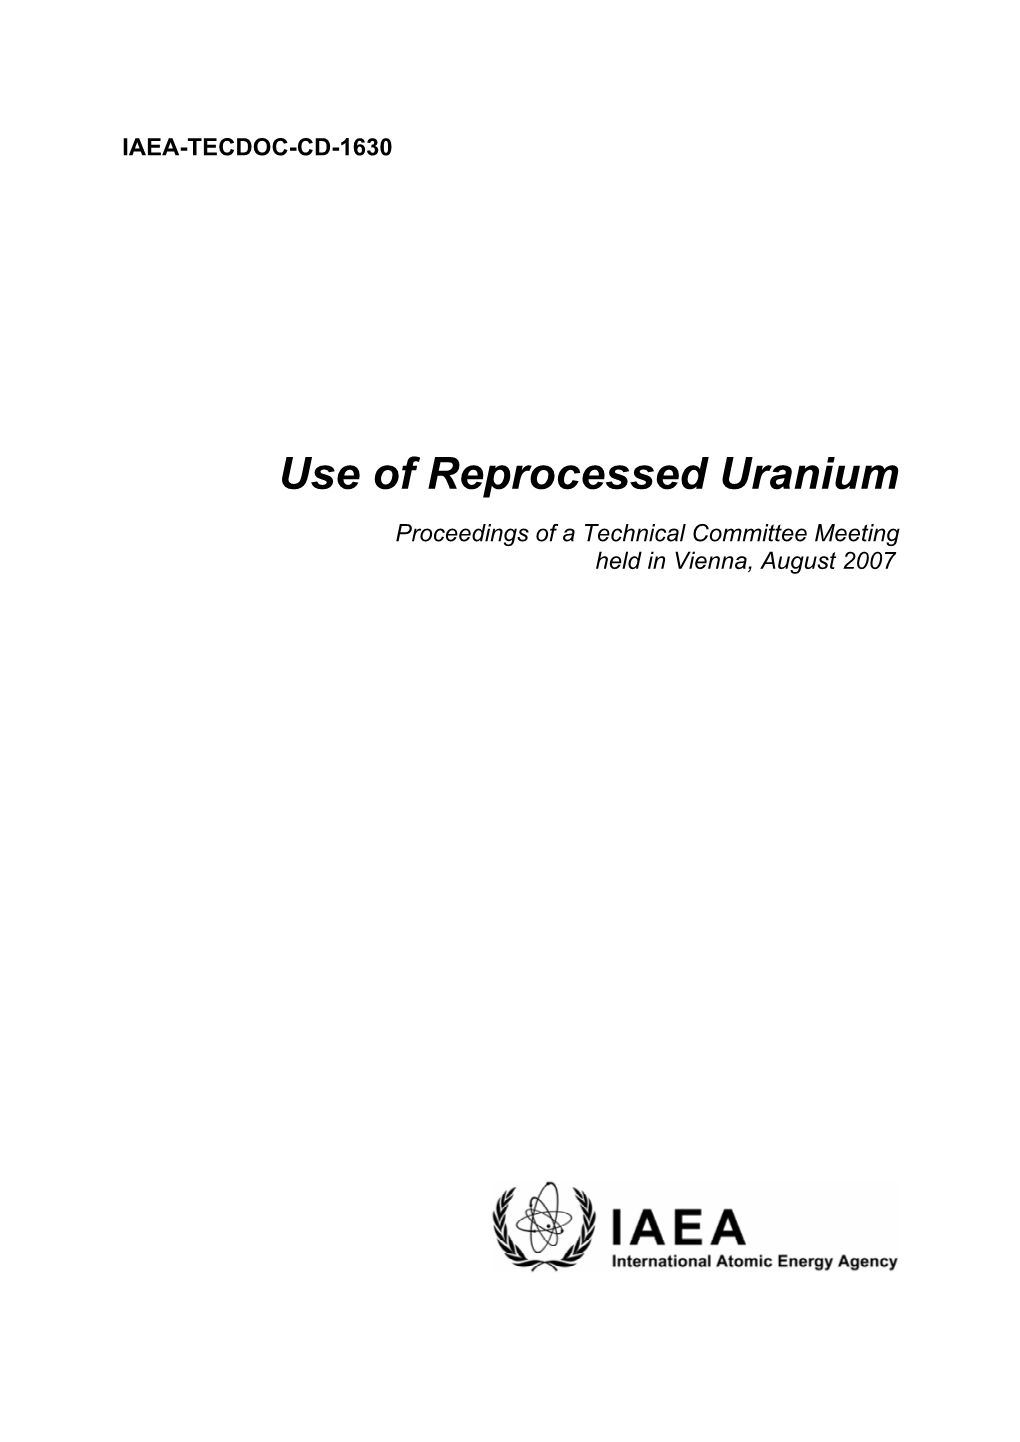 Use of Reprocessed Uranium